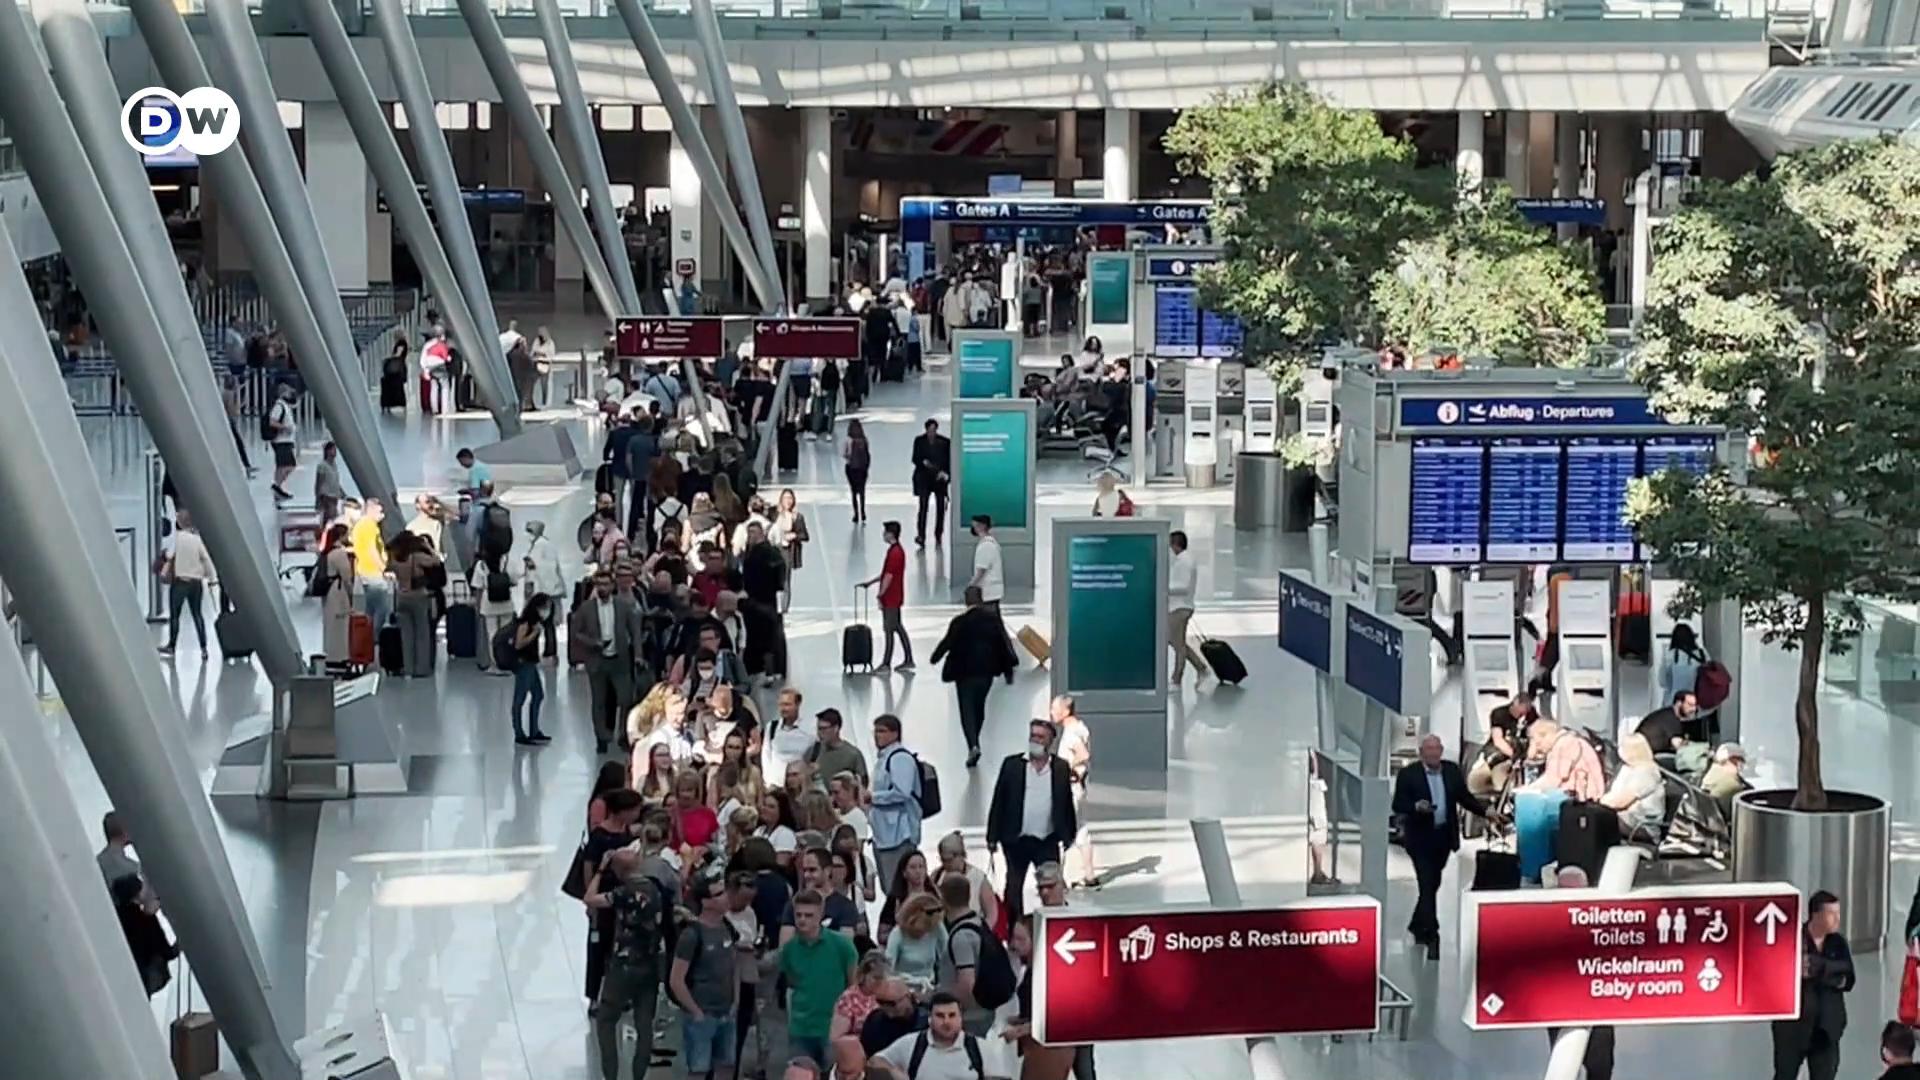 Εν μέσω θέρους η κατάσταση στα γερμανικά αεροδρόμια δεν προδιαθέτει για διακοπές #Εuropeo